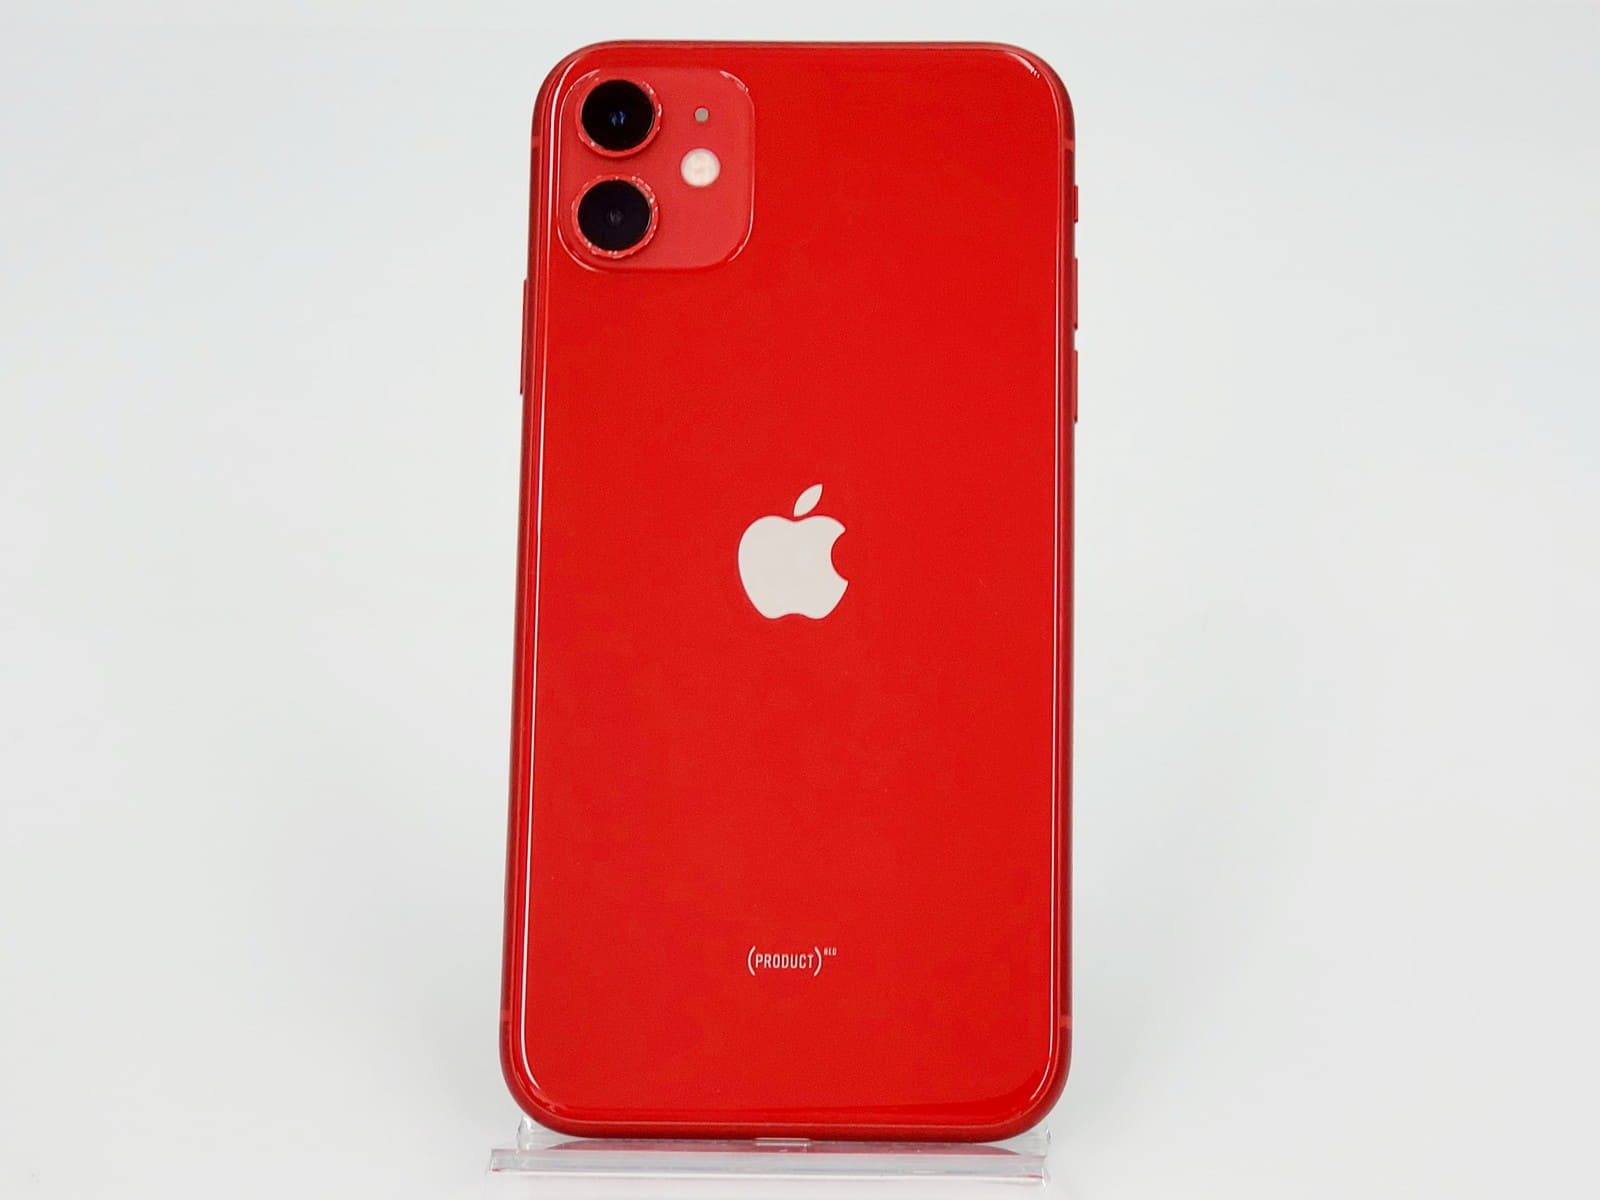 特価: iPhone XR red 128 GB Softbank スマートフォン本体